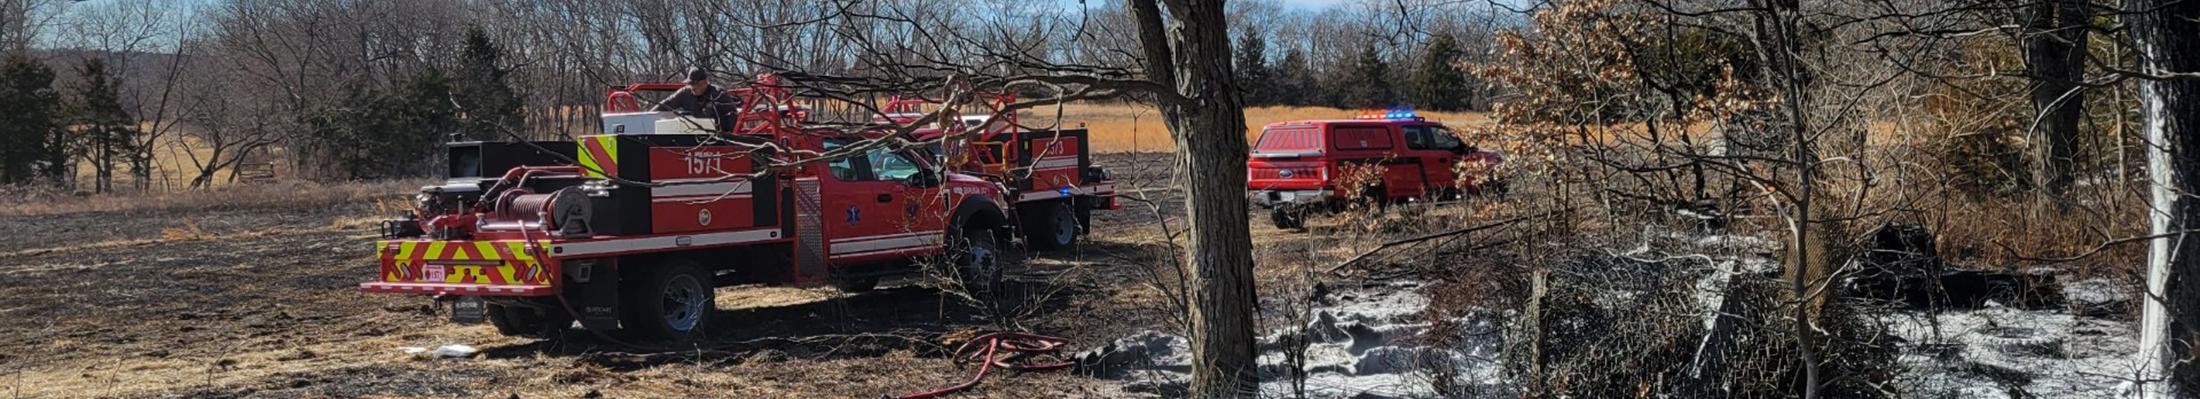 Fire emergency in rural field